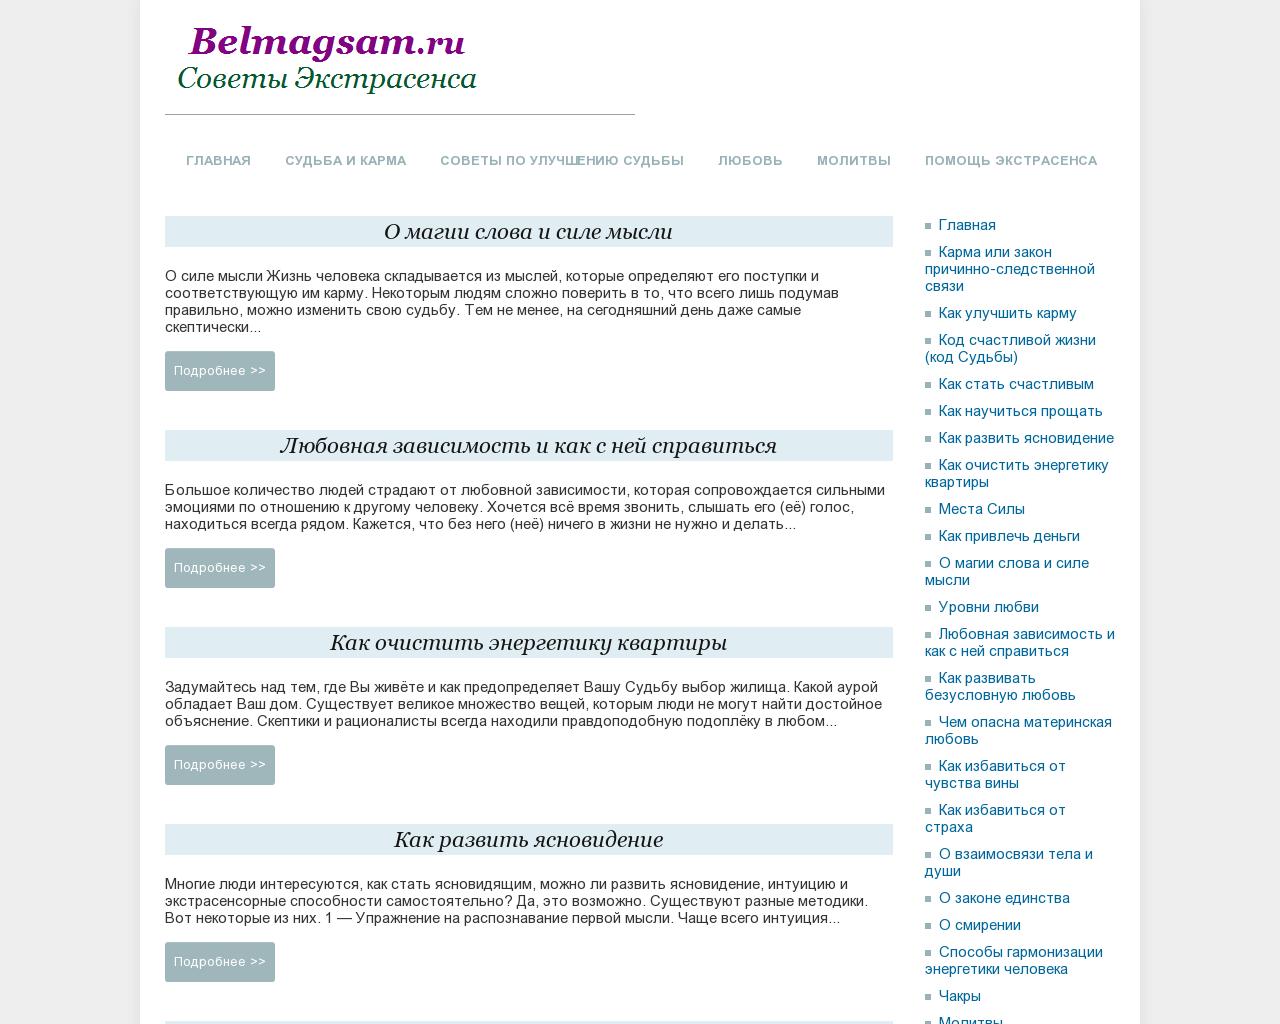 Изображение сайта belmagsam.ru в разрешении 1280x1024